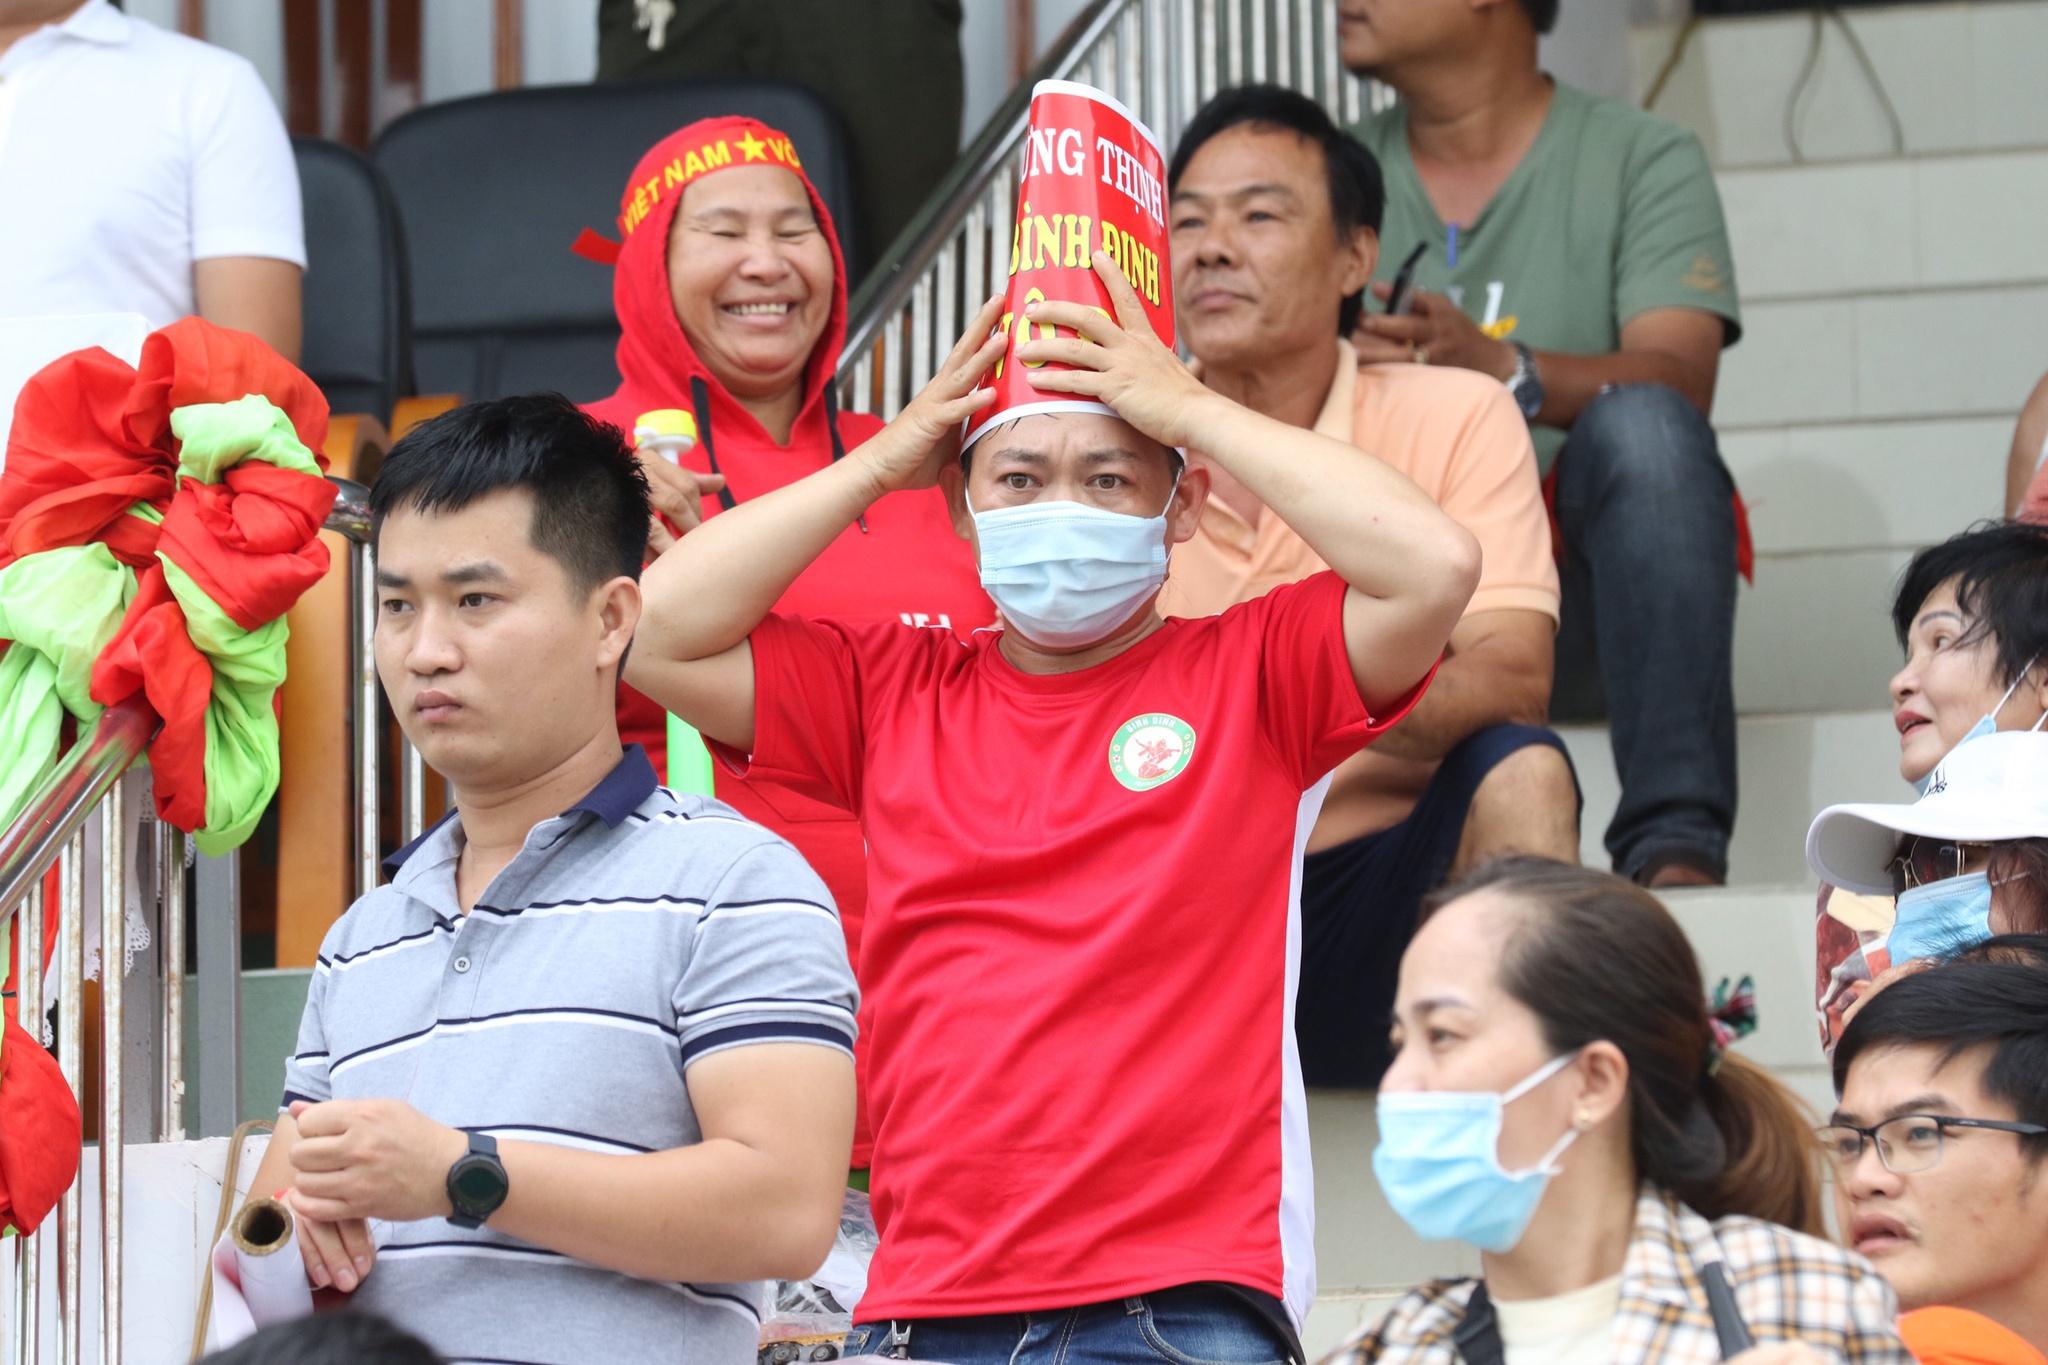 Kết quả suất lên hạng V-League: Chúc mừng CLB Bình Định, tiếc cho Bà Rịa - Vũng Tàu! - ảnh 13